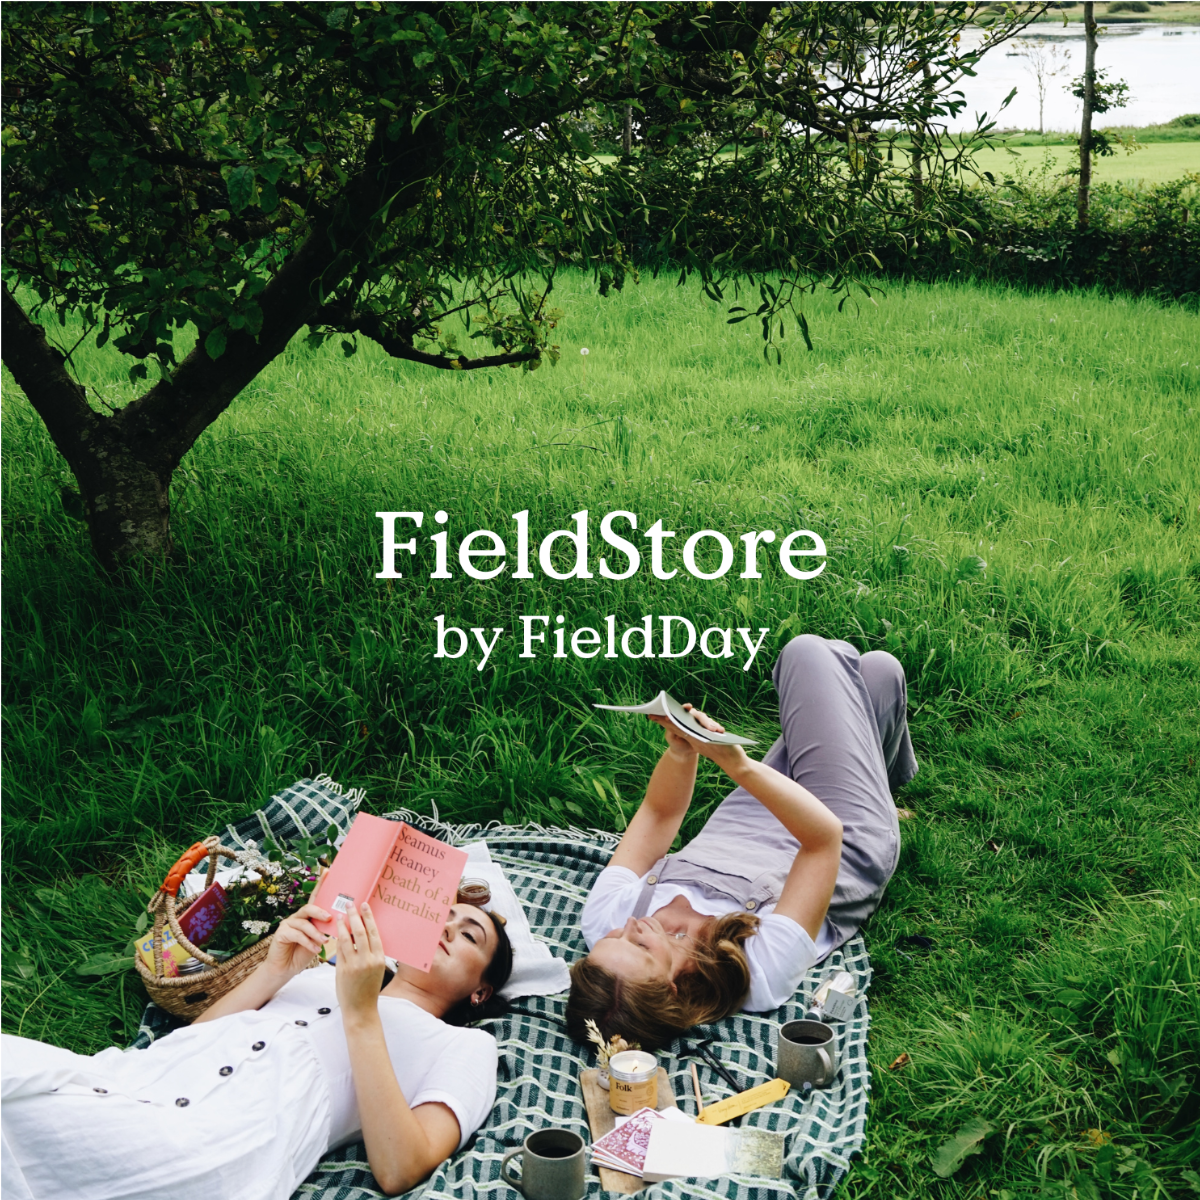 Introducing FieldStore by FieldDay